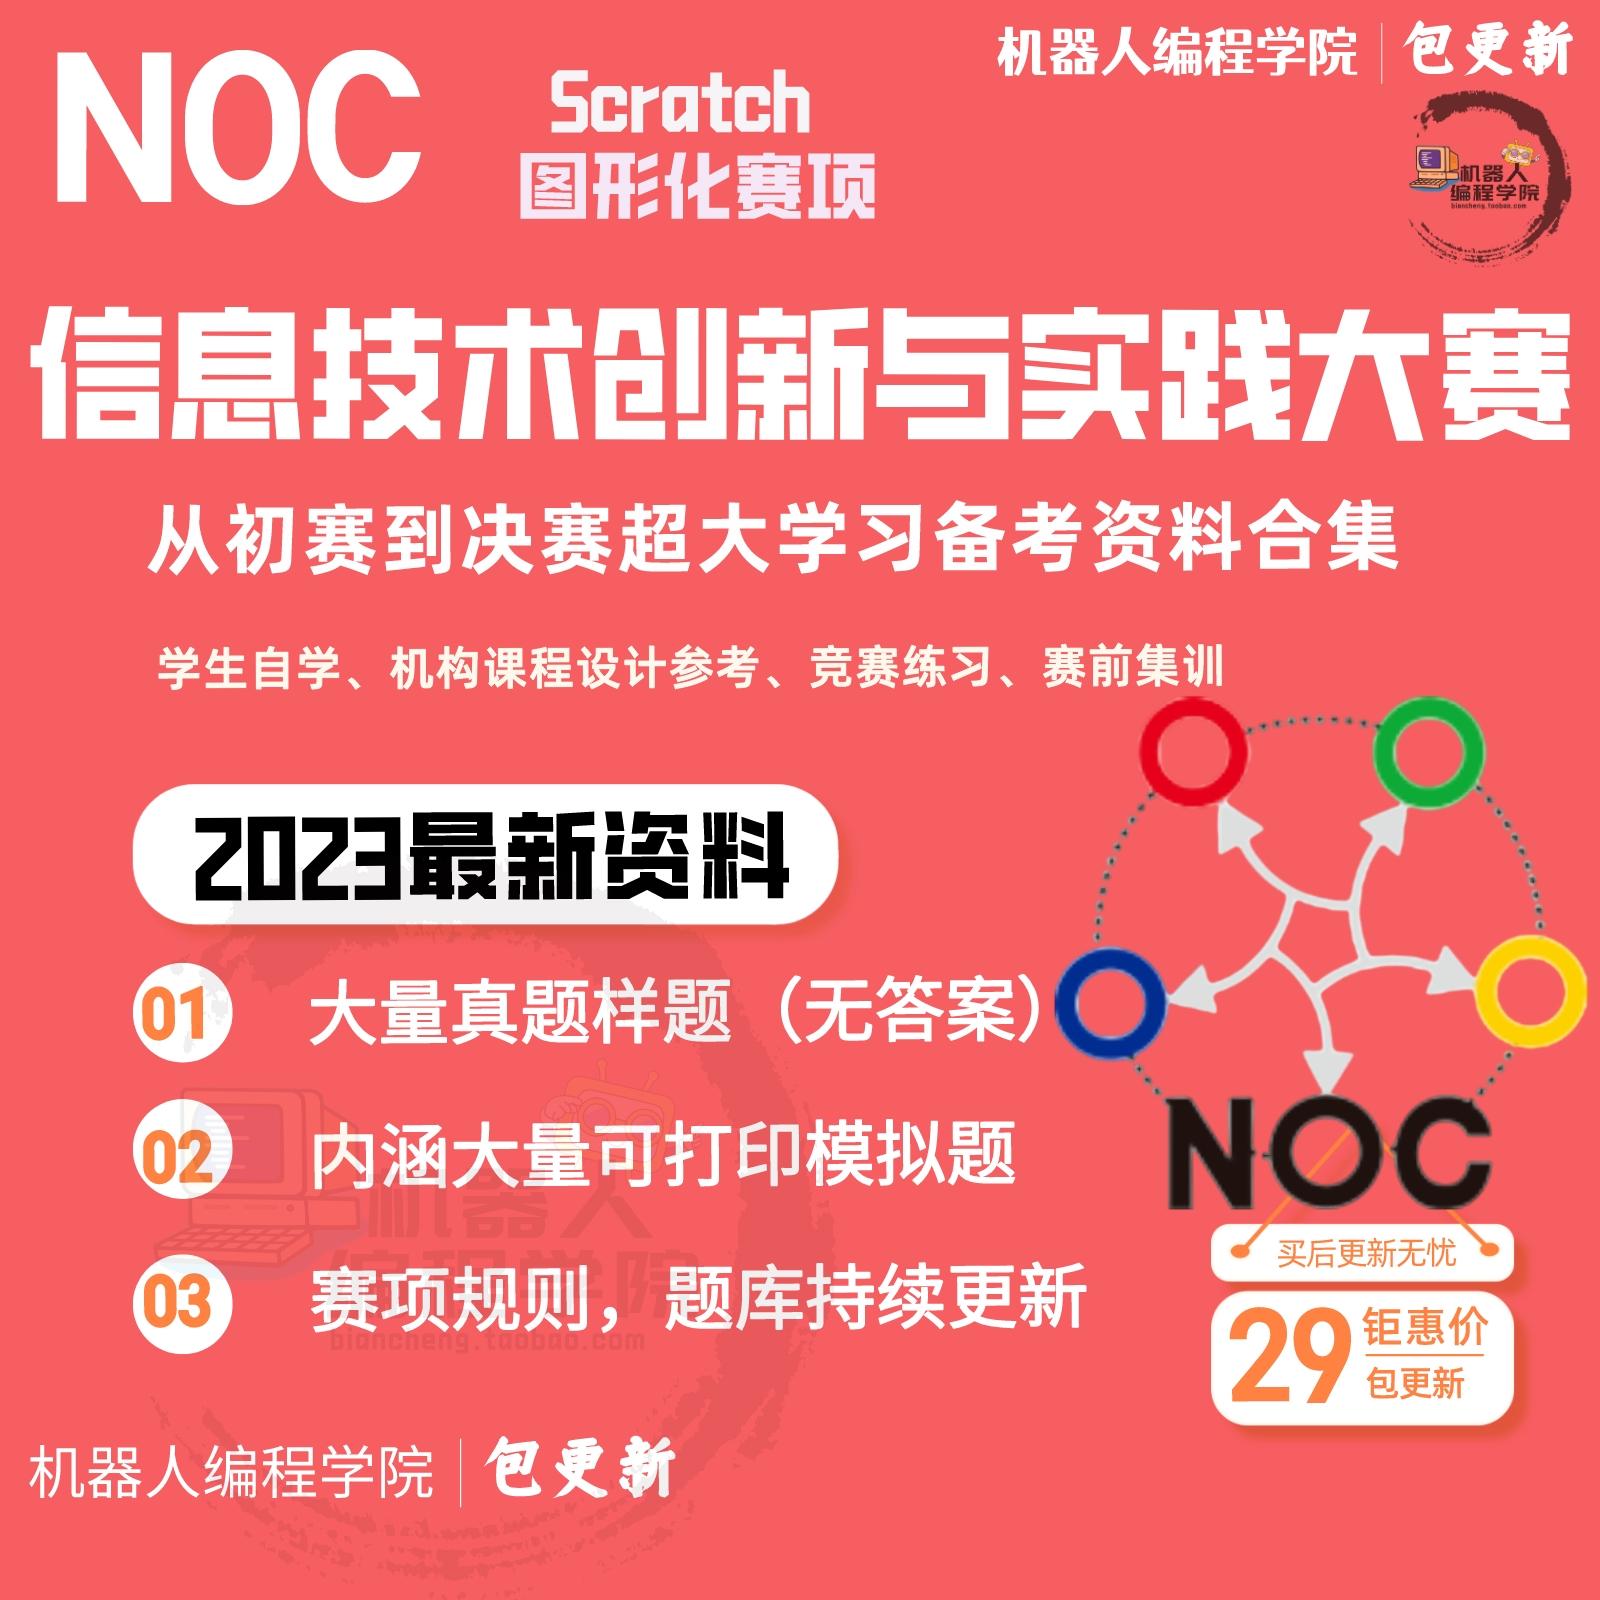 2023年NOC信息技术创新与实践大赛scratch图形化真题模拟题训练库 商务/设计服务 平面广告设计 原图主图